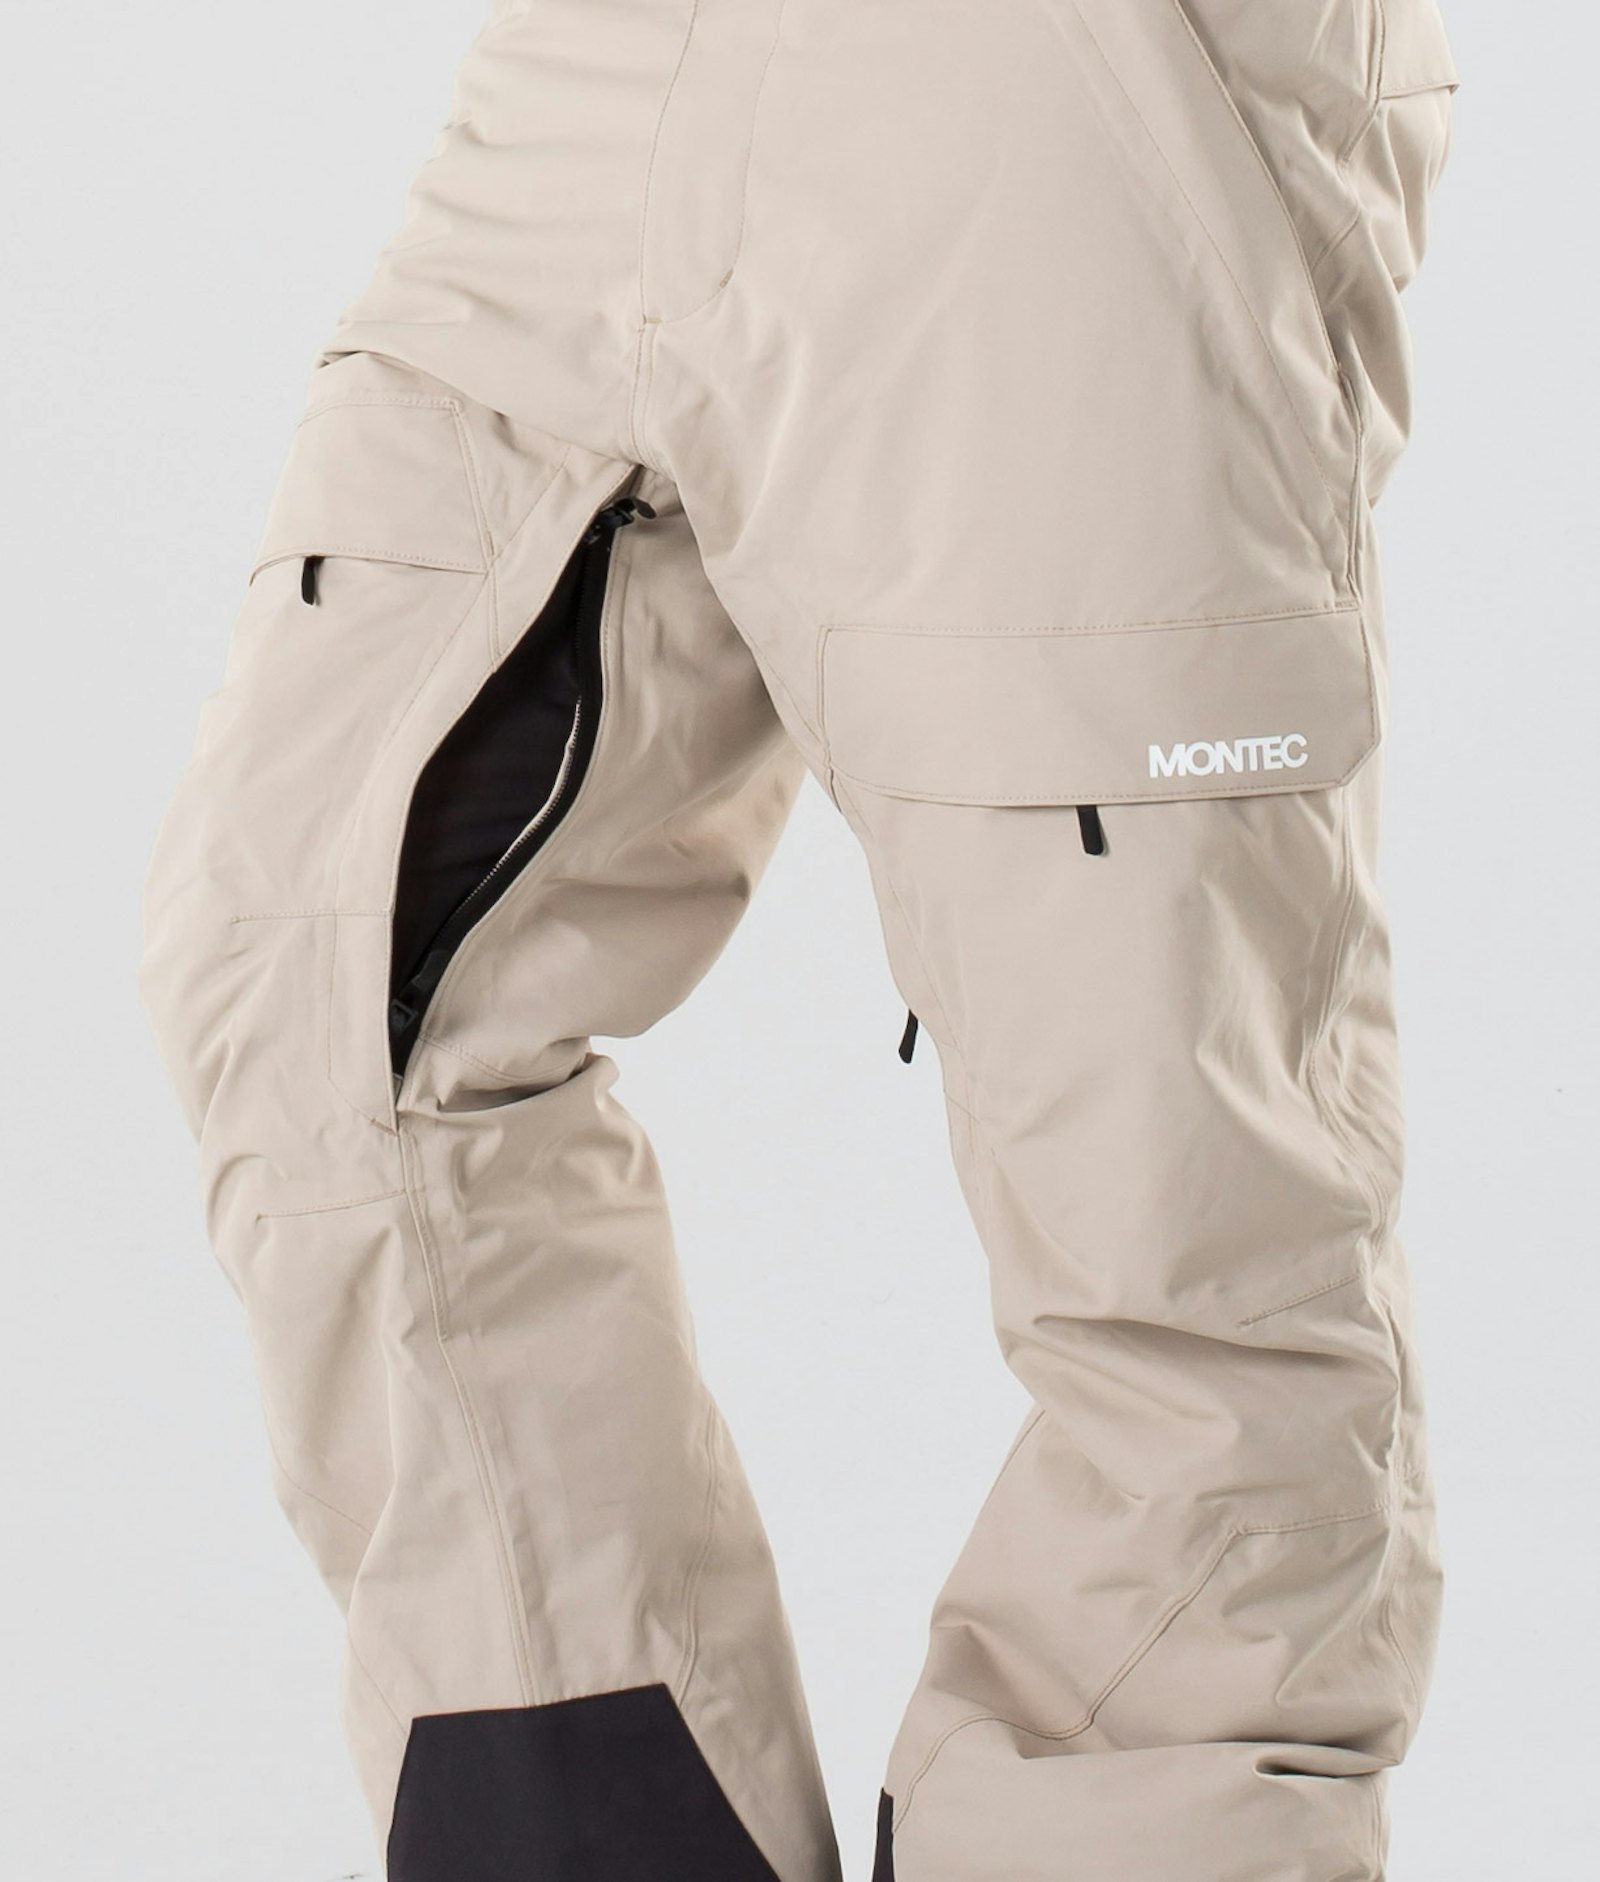 Montec Dune 2019 Snowboard Pants Men Desert